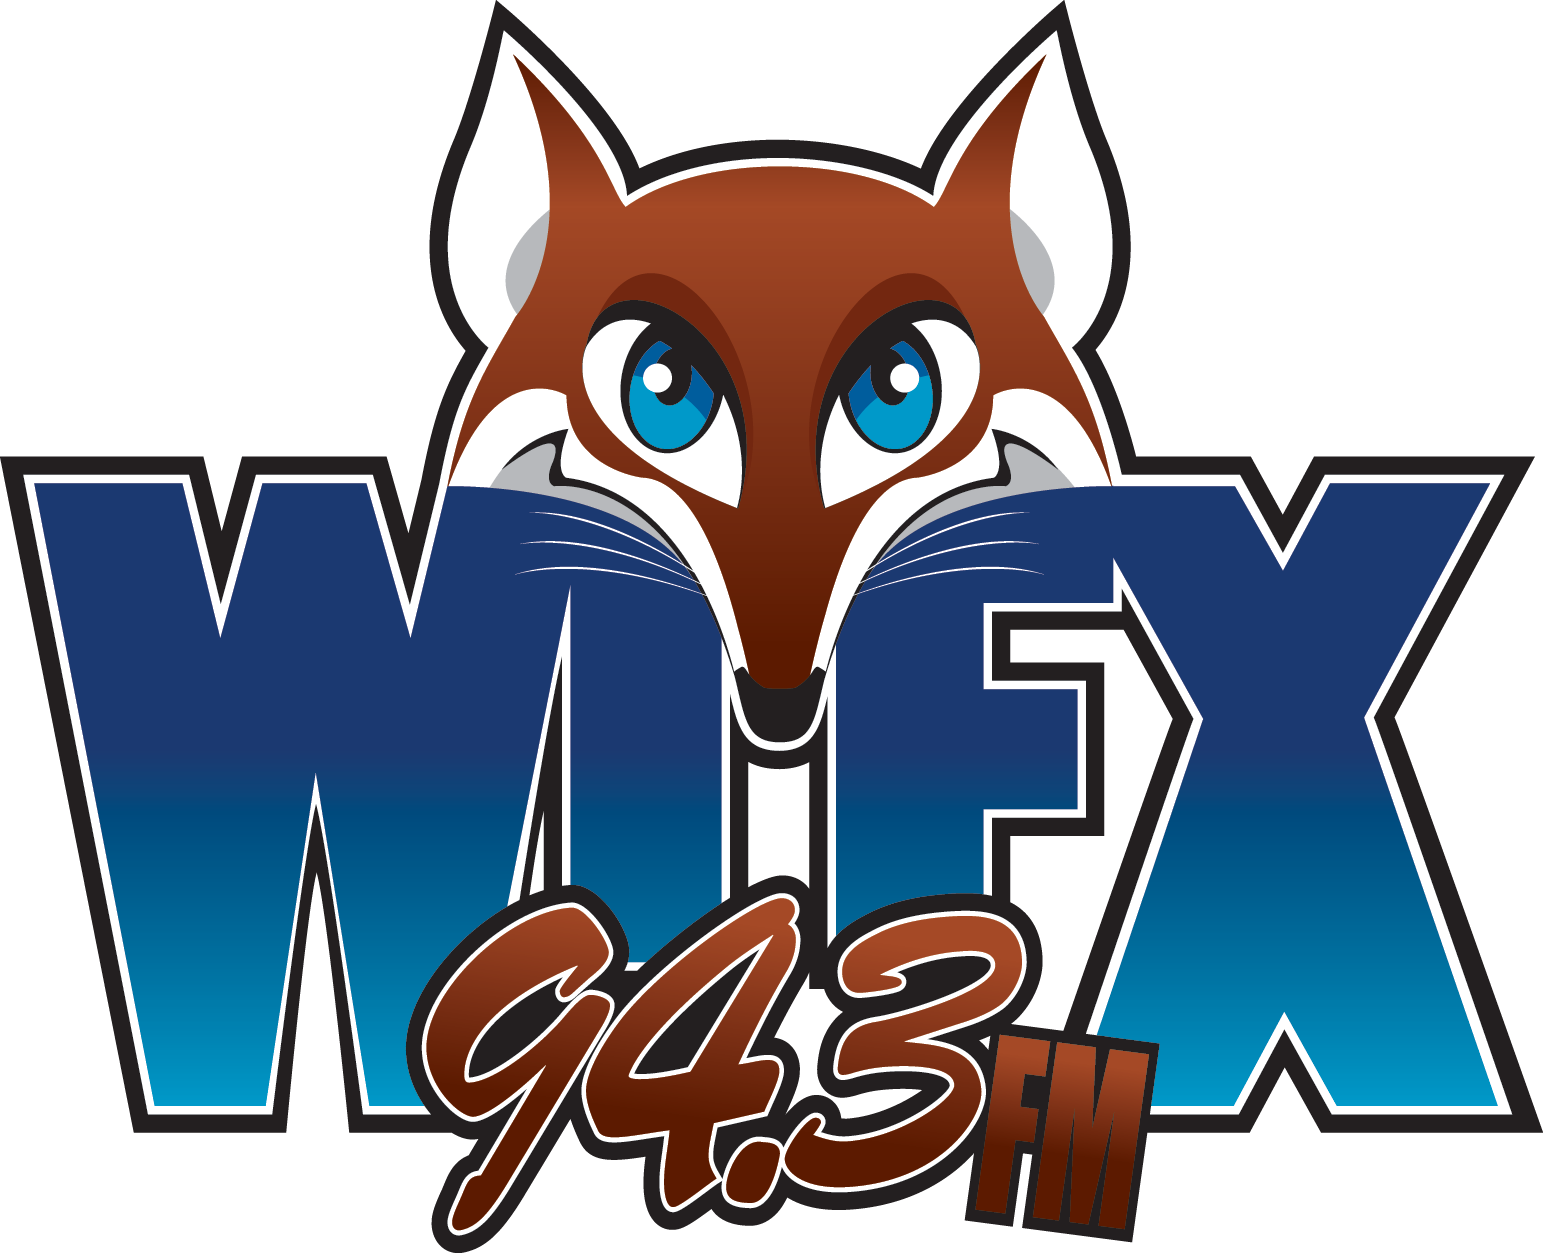 WIFX 94.3 FM